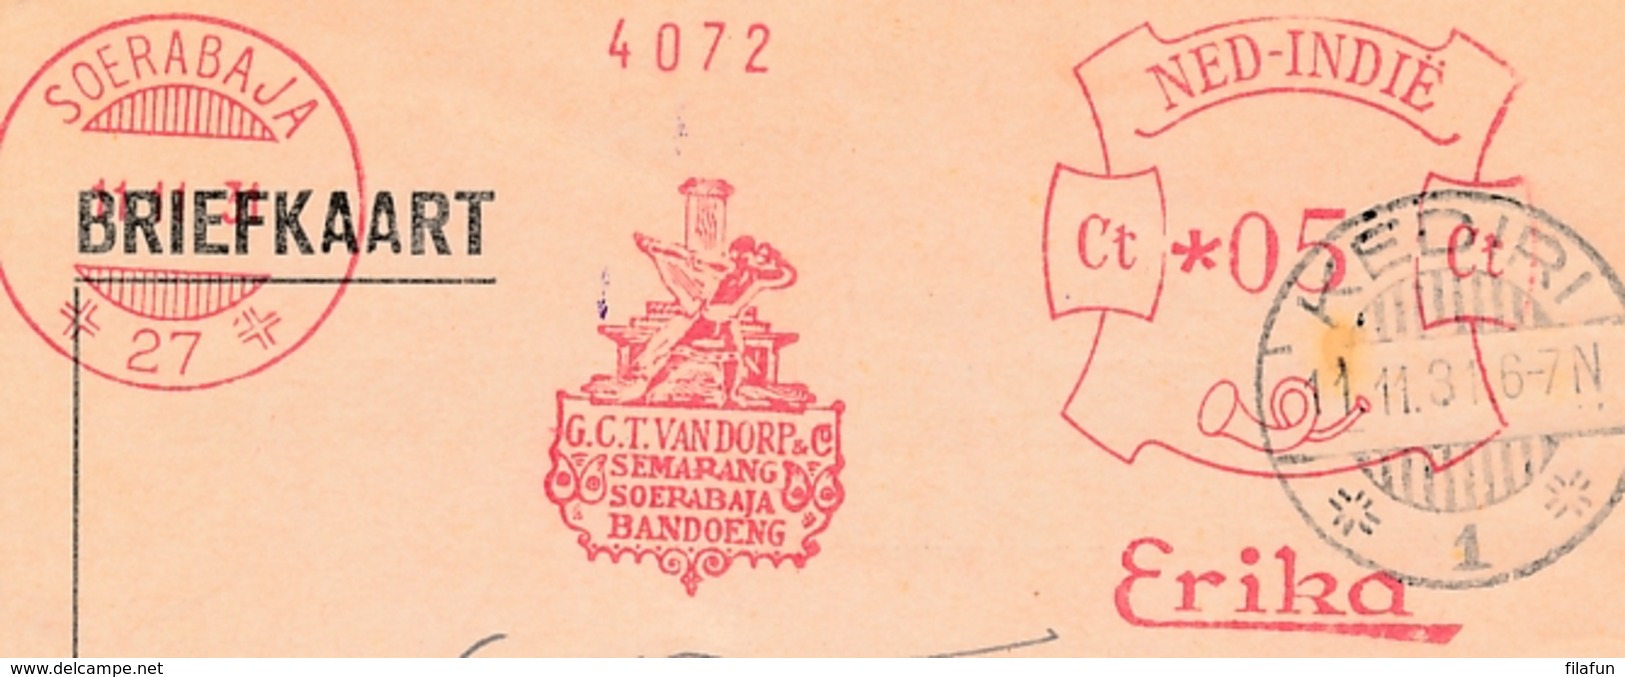 Nederlands Indië - 1931 - Briefkaart Van Frankeermachine 27 (van Dorp) Naar LB KEDIRI/1 - Nederlands-Indië